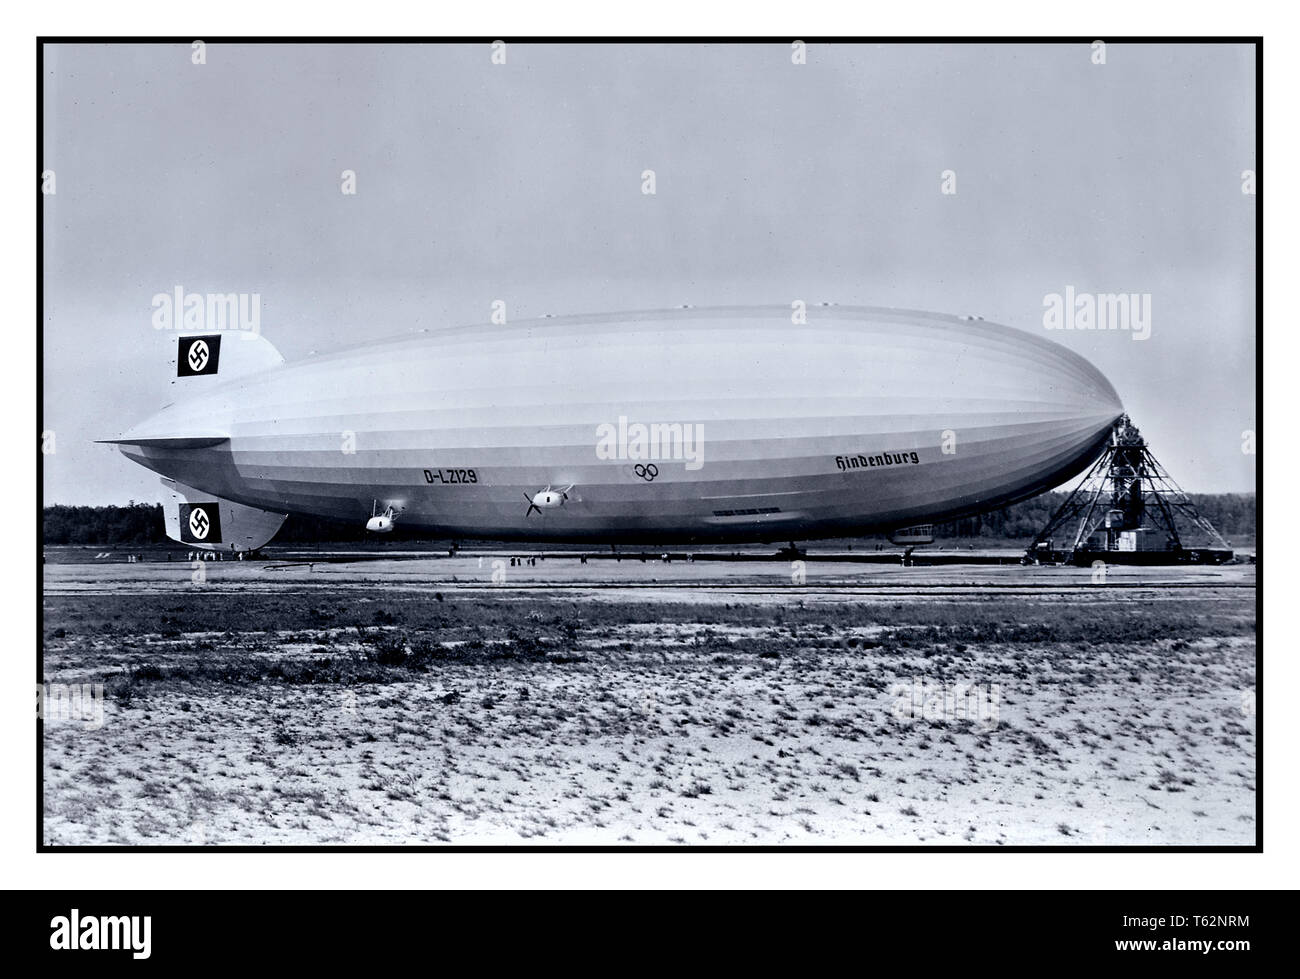 La propagande nazie de 1930 image de LZ-129 Hindenburg avec queue Swastika ailettes, le fameux Zeppelin, à Lakehurst Naval Air Station Nord USA 1936. Banque D'Images